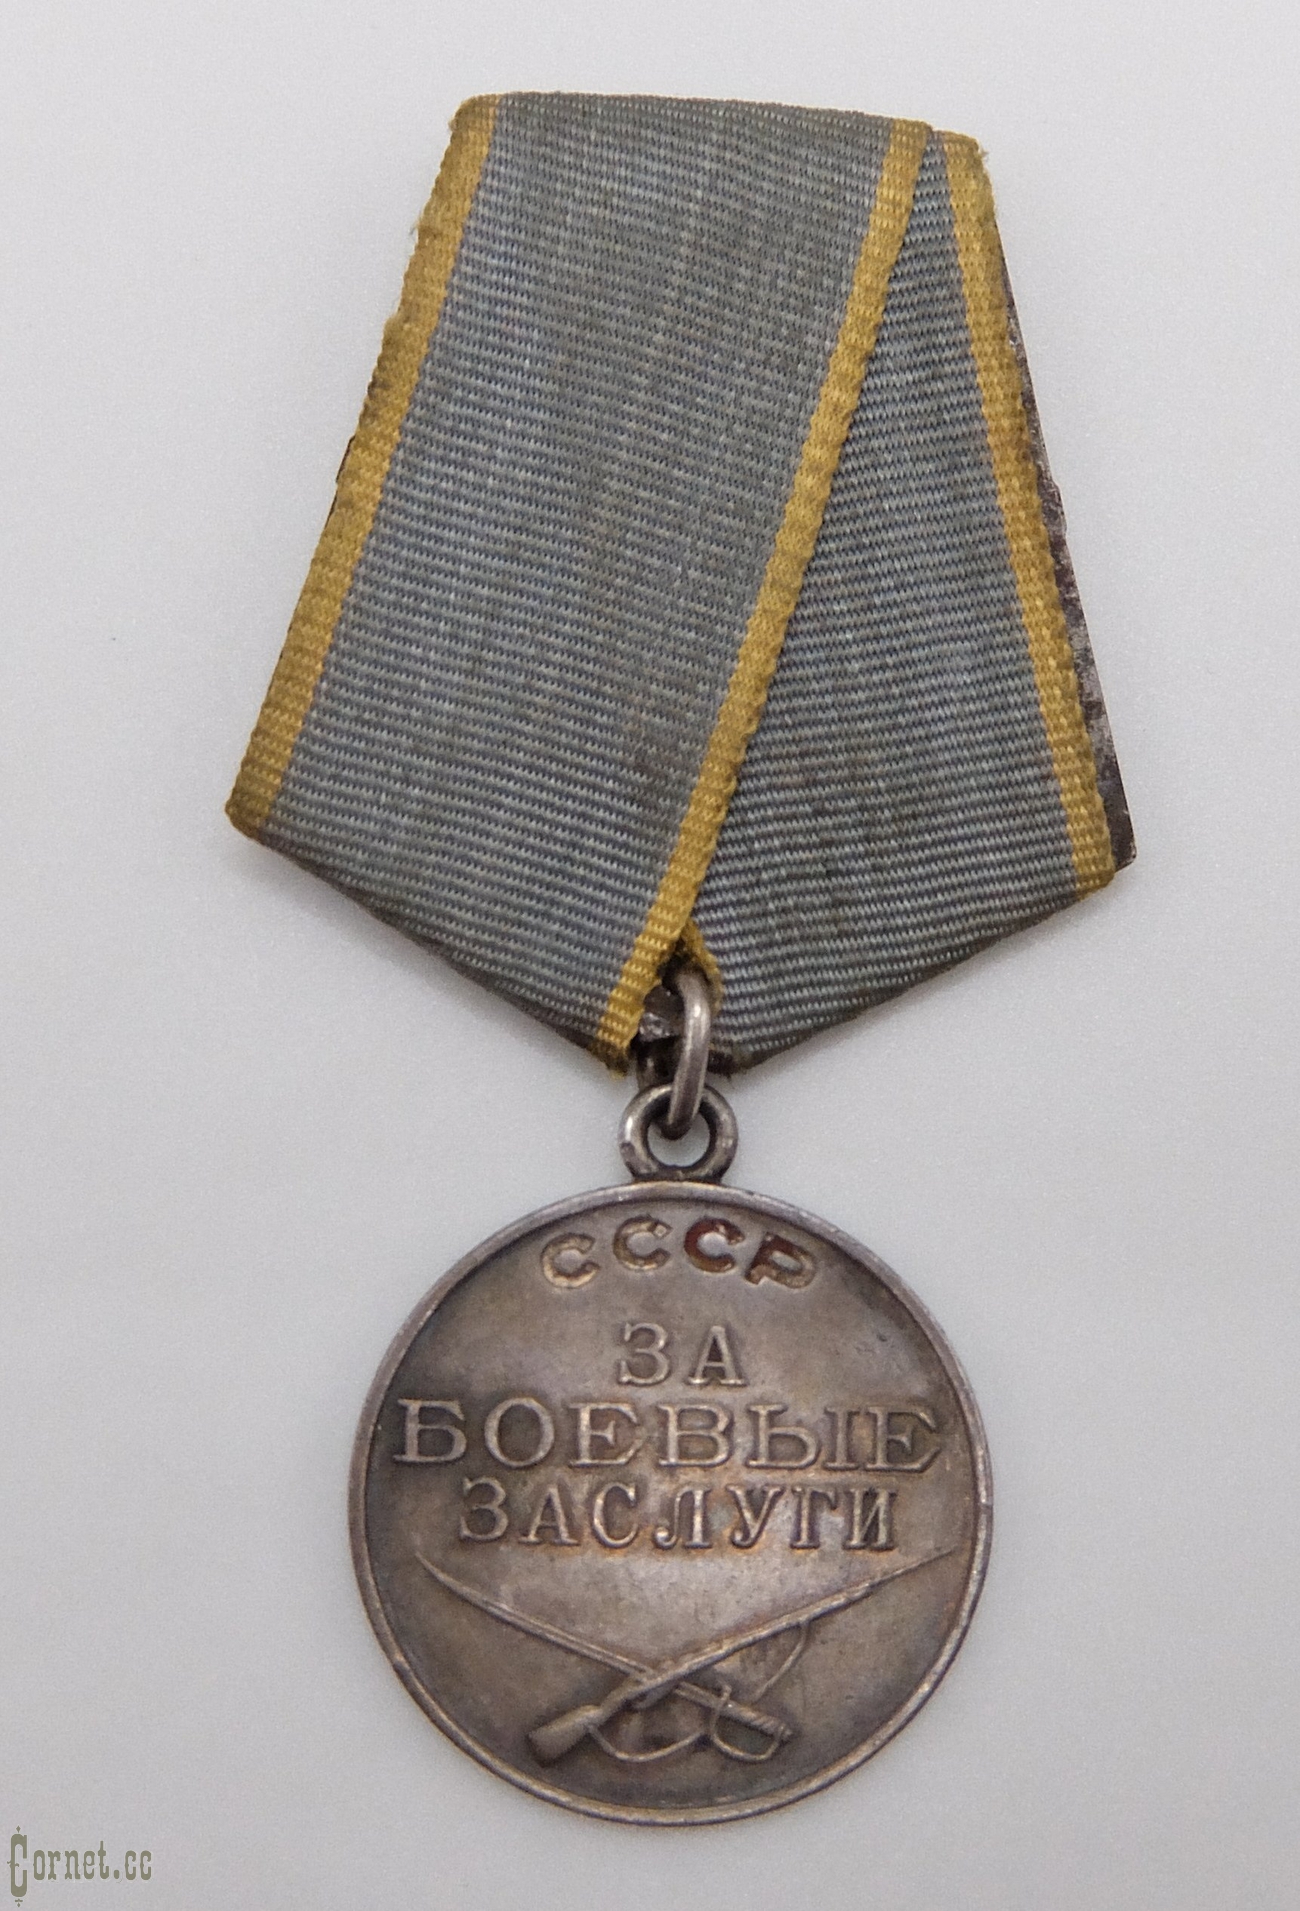 Medal for military merit